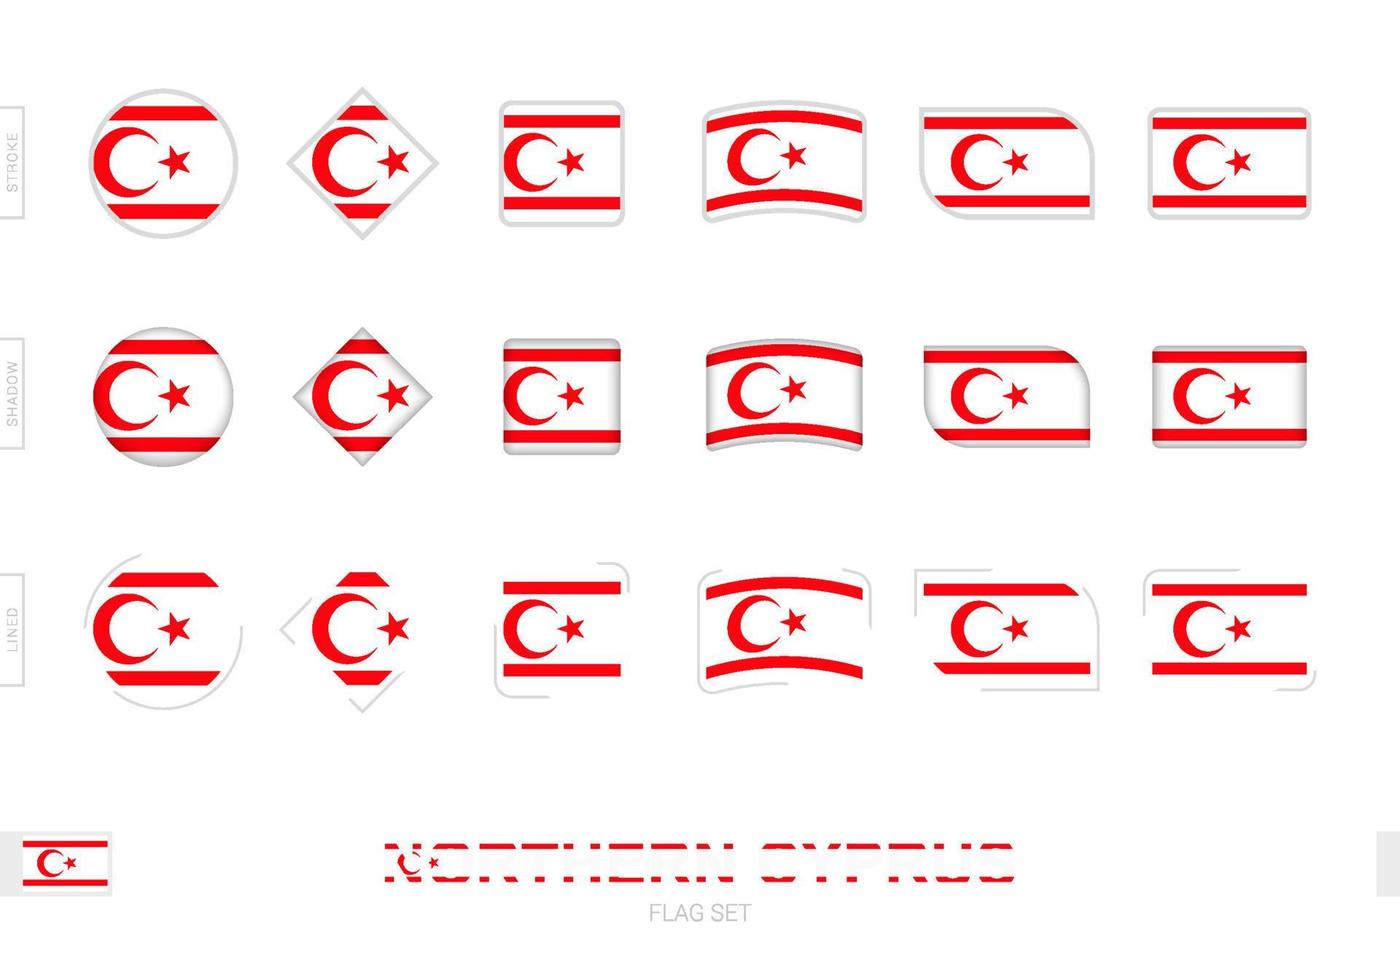 Nordzypern-Flaggensatz, einfache Flaggen Nordzyperns mit drei verschiedenen Effekten. vektor